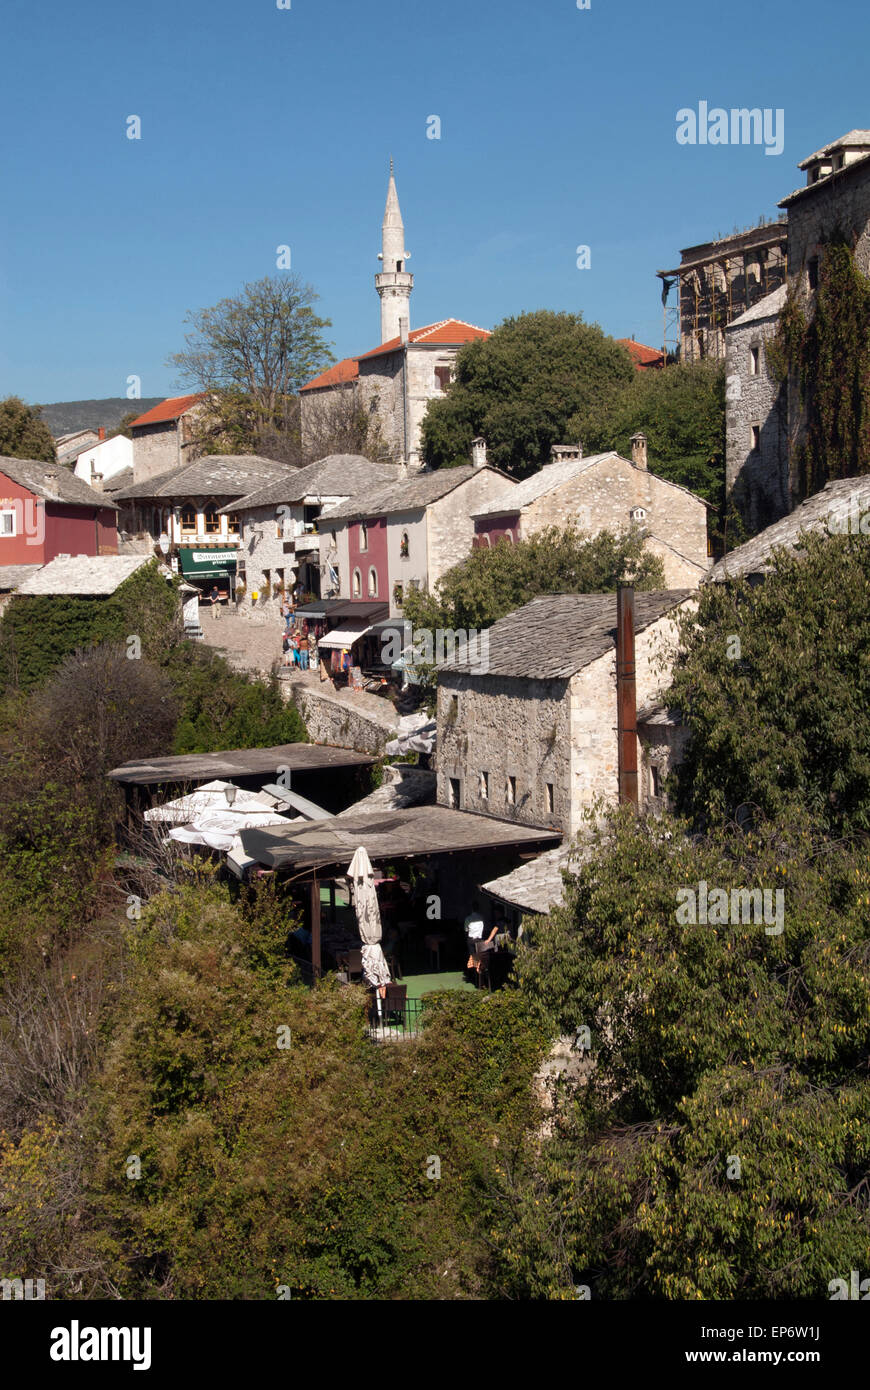 La Bosnia e HERZGOVINA; minareto di Mostar, case di strada e le bancarelle del mercato Foto Stock